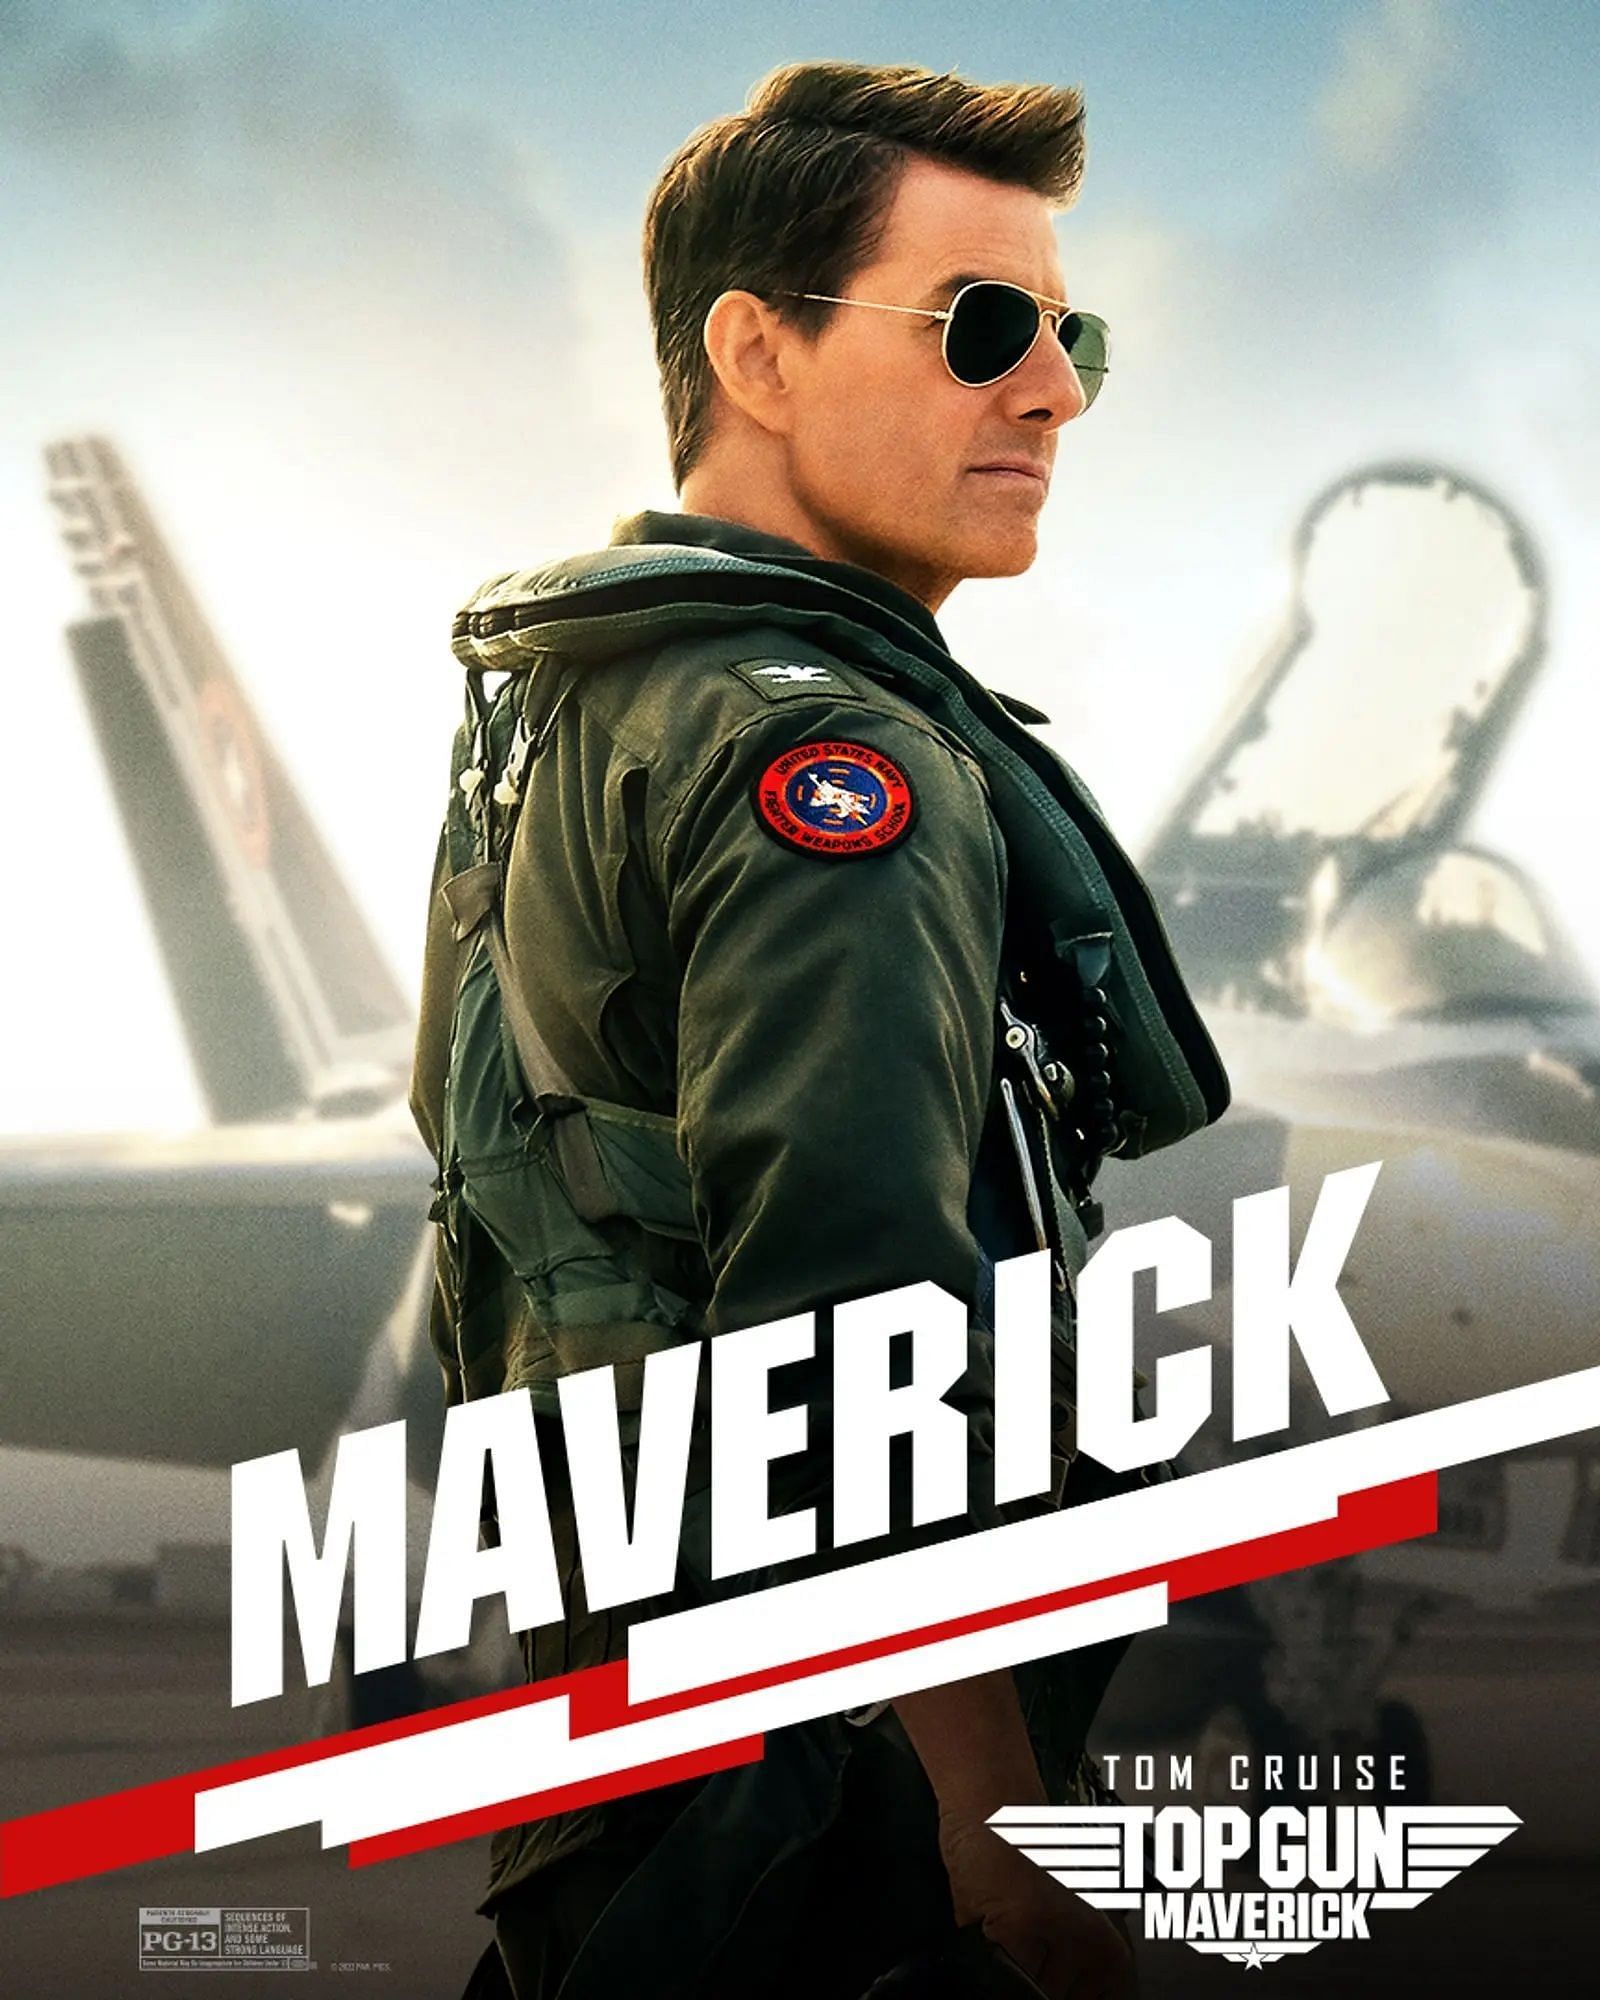 Top Gun: Maverick (Image via Paramount)